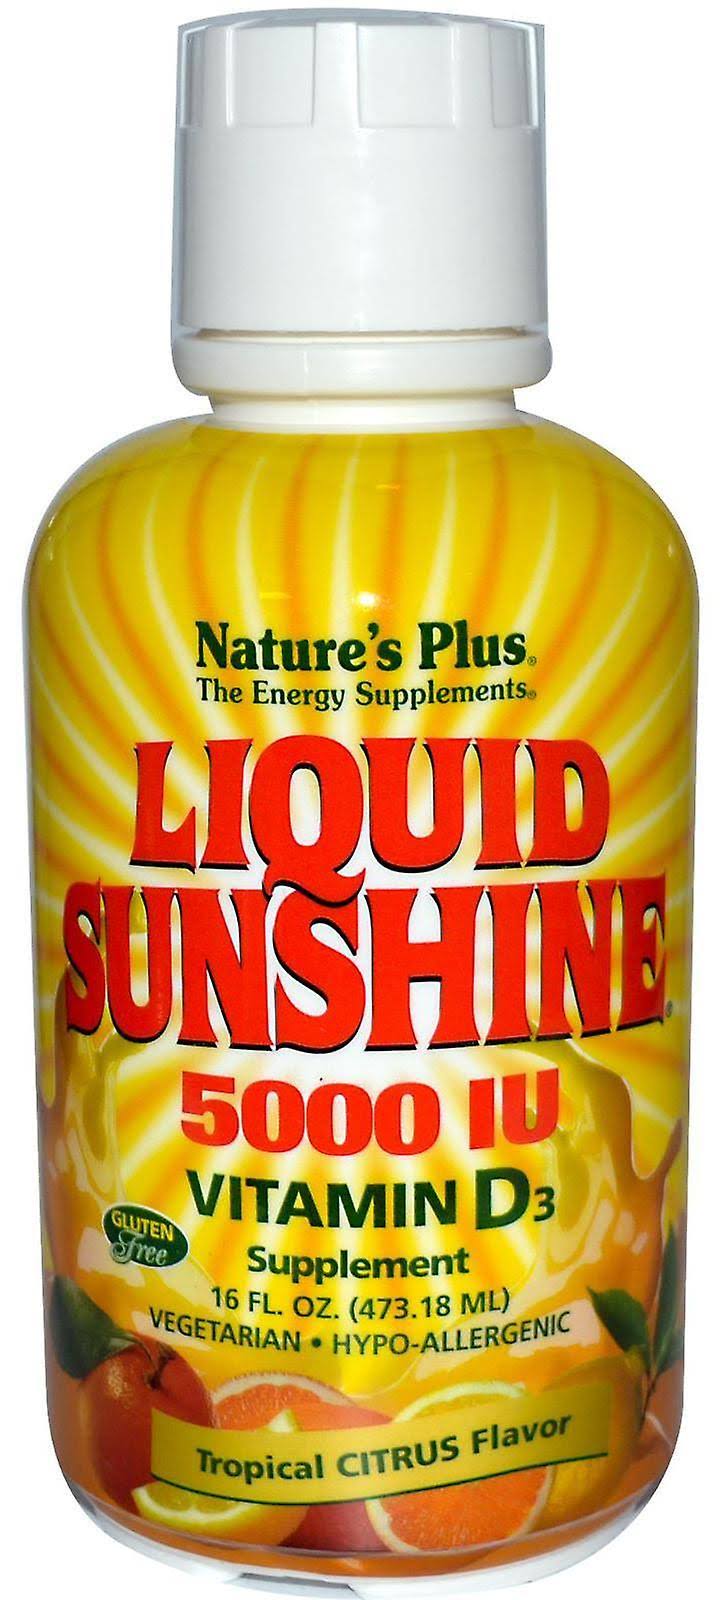 Nature's Plus Liquid Sunshine 5000IU Vitamin D3 Supplement - Tropical Citrus, 473ml